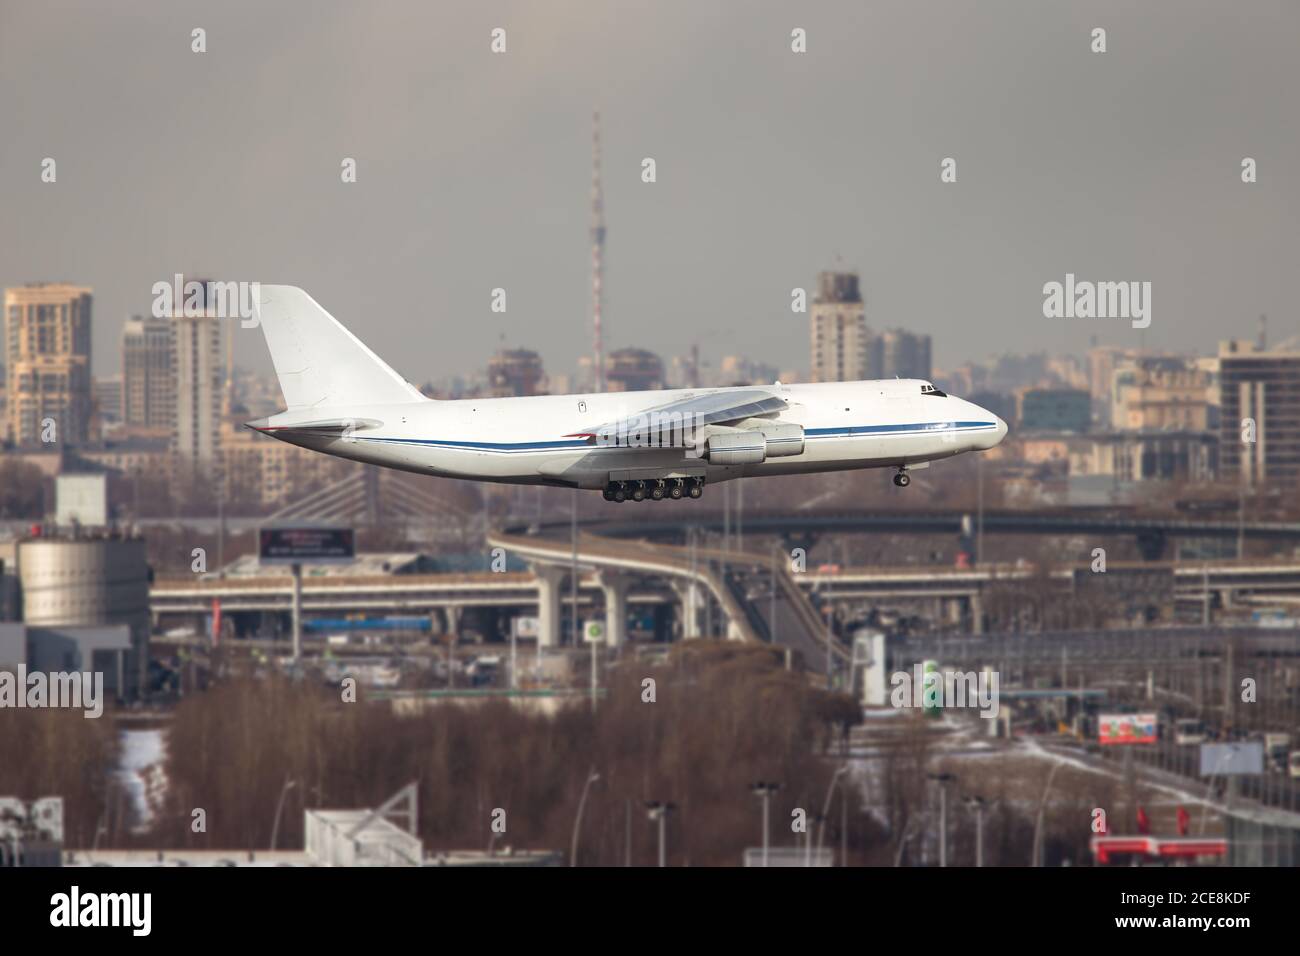 Le plus grand fret et avion militaire stratégique décollage à la journée ensoleillée, Saint-Pétersbourg d'un point élevé sur fond Banque D'Images